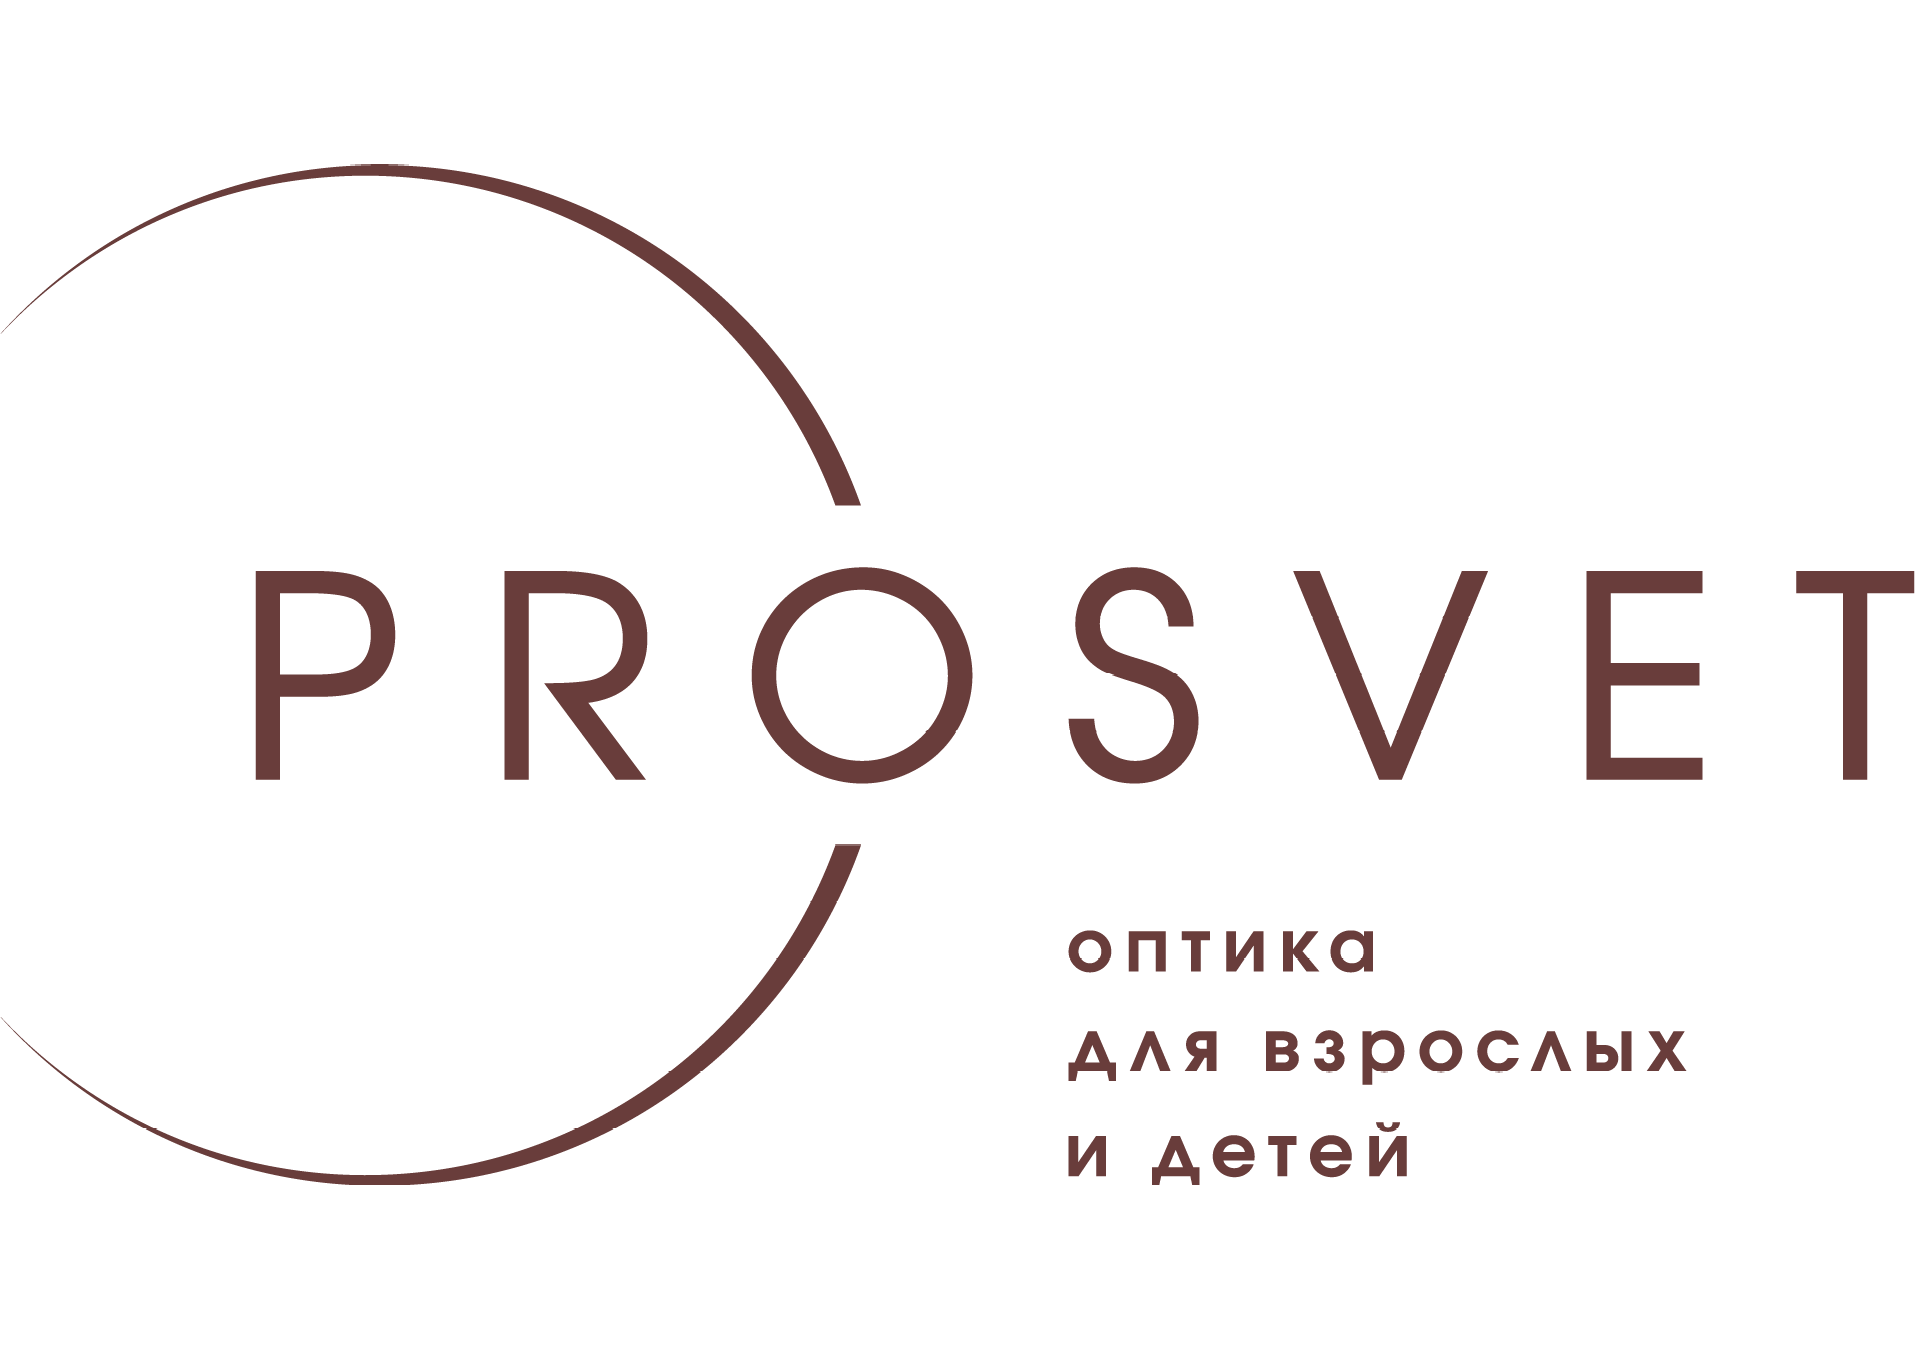 Сеть оптик "PROSVET" на Свердлова